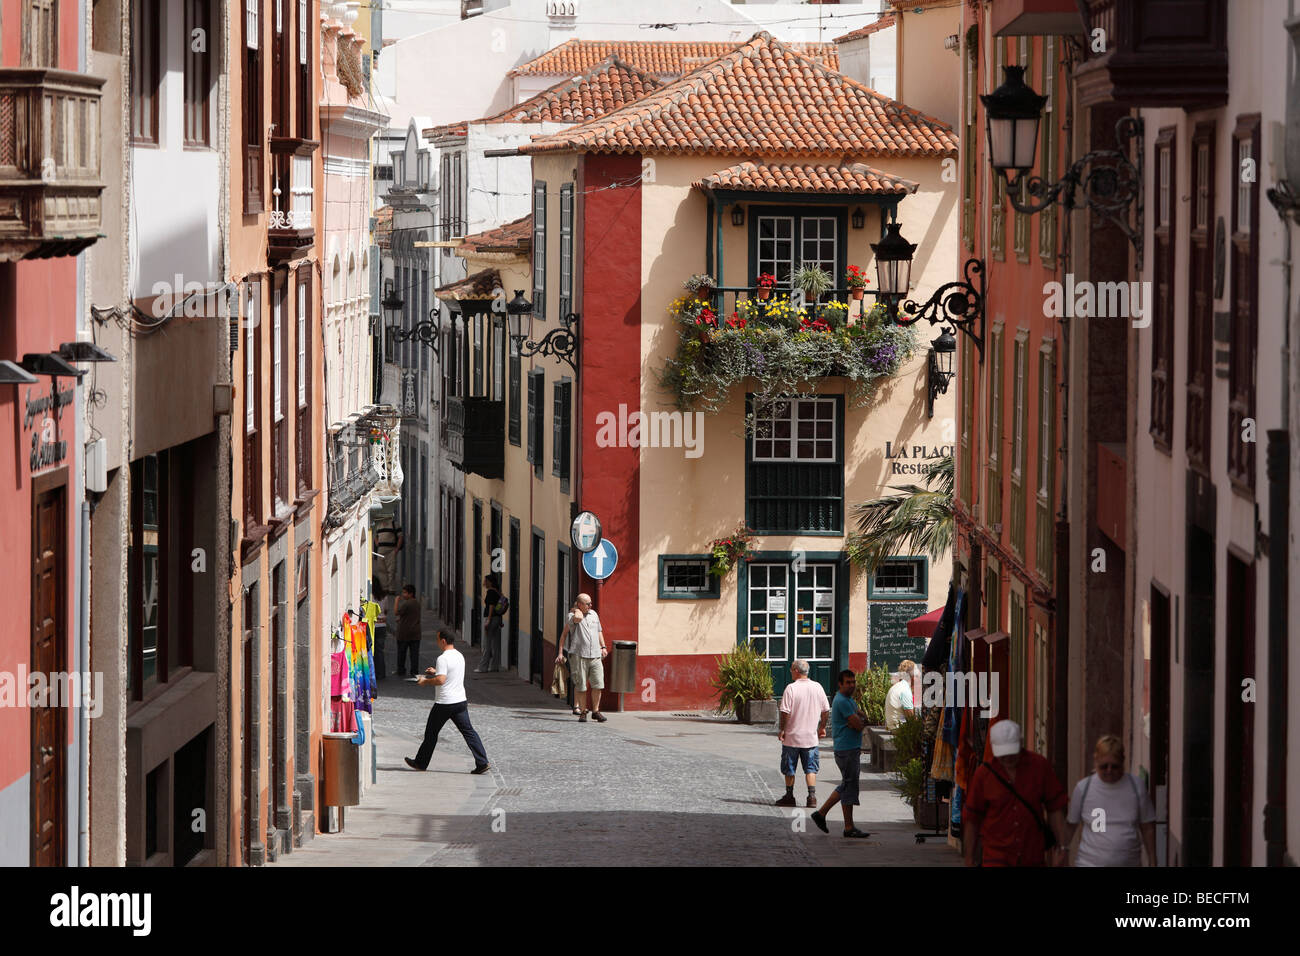 Calle Pérez de Brito et Placeta de Borrero, ville historique de Santa Cruz de la Palma, La Palma, Canary Islands, Spain Banque D'Images